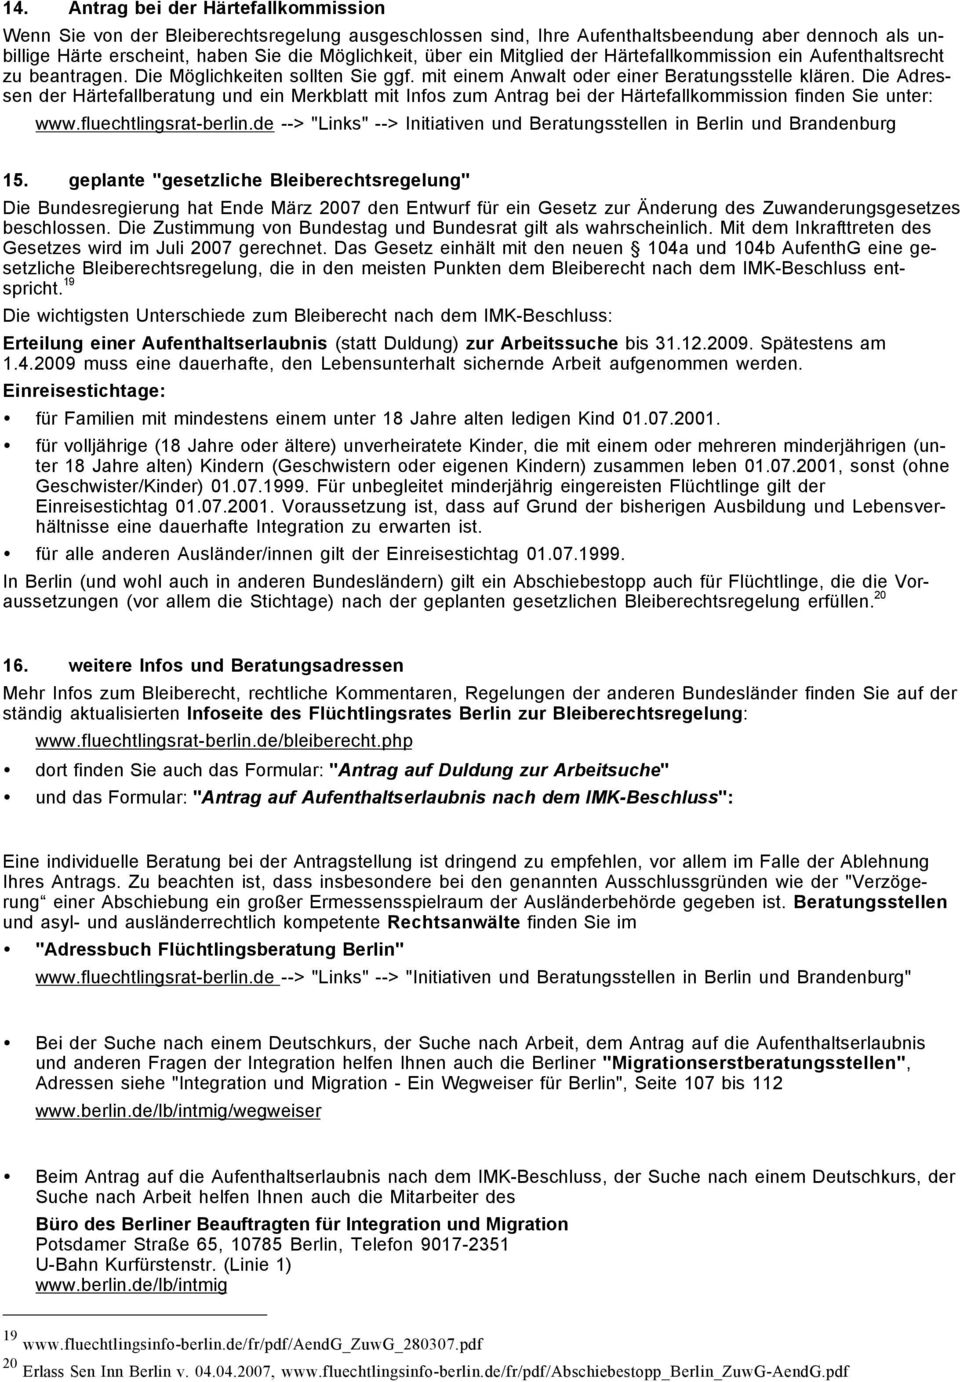 Die Adressen der Härtefallberatung und ein Merkblatt mit Infos zum Antrag bei der Härtefallkommission finden Sie unter: www.fluechtlingsrat-berlin.